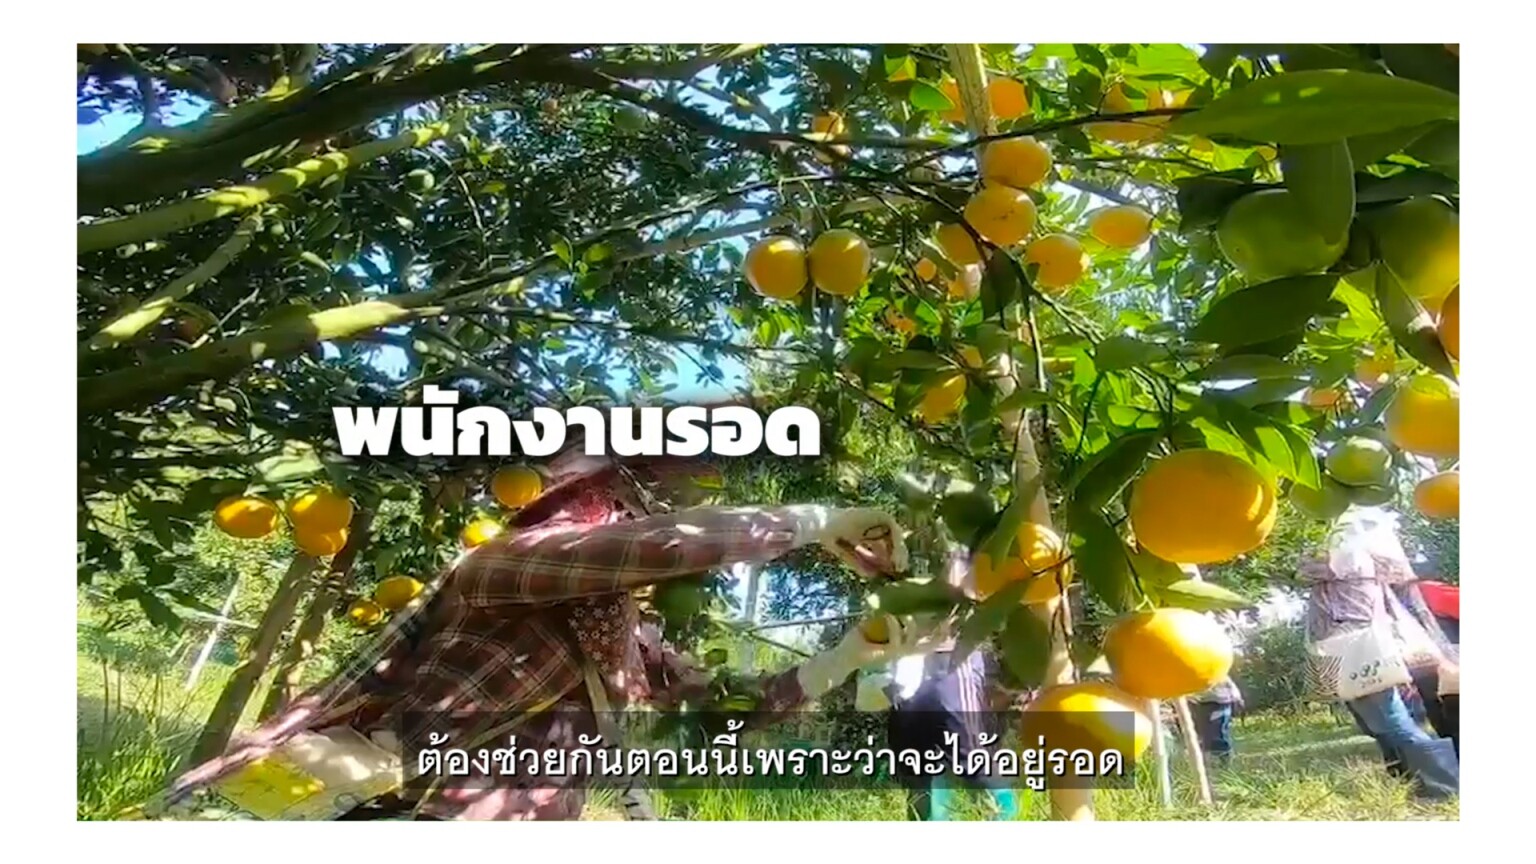 กสิกรไทย ปั้น “รวมใจช้อปของไทย” ดึงพันธมิตรช่วยชาวสวน และผู้ผลิตผลไม้แปรรูป ผ่านช่วงโควิด-19